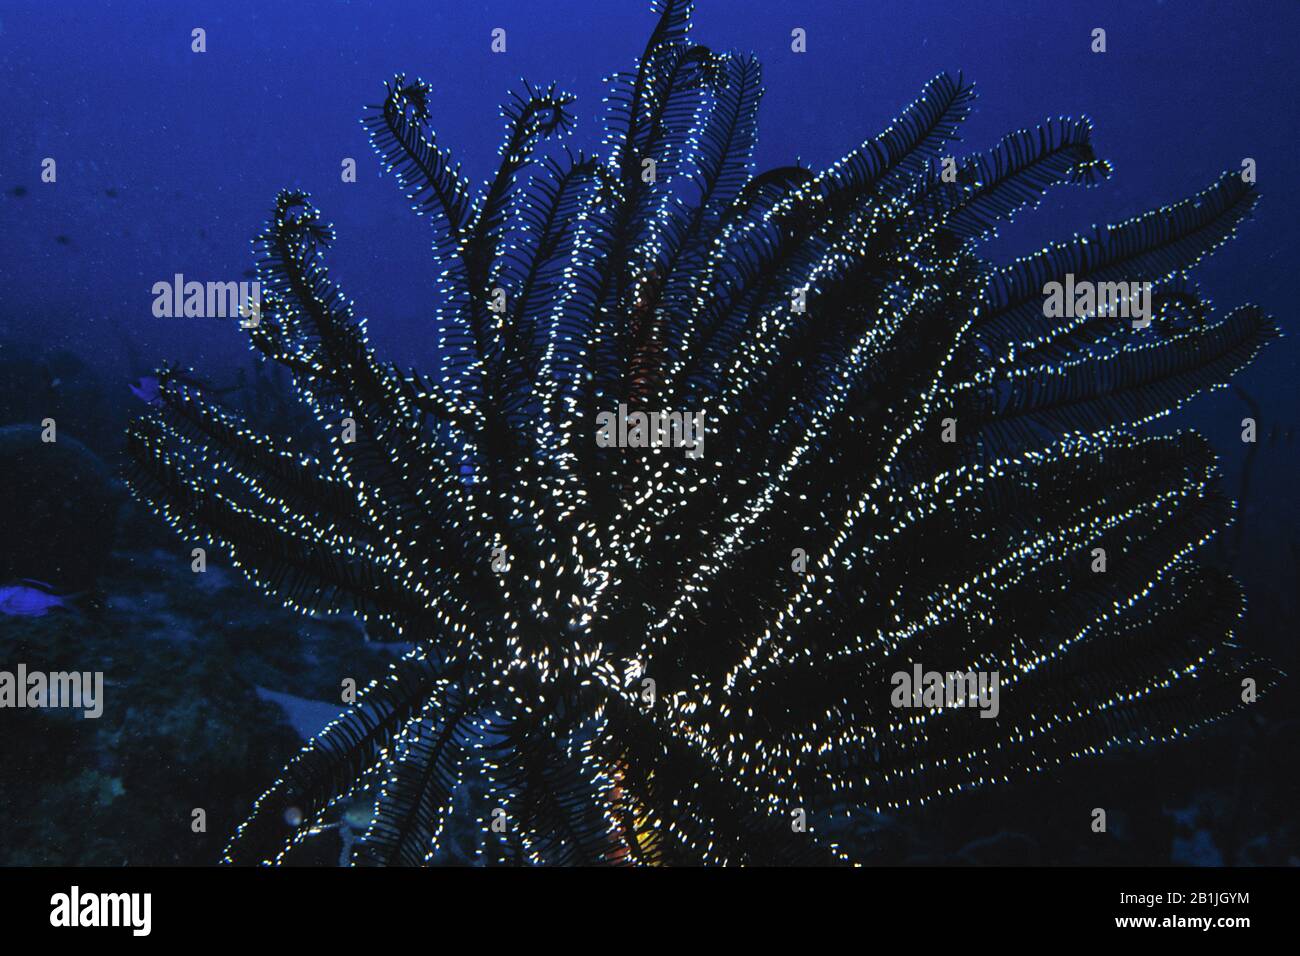 sea lily, crinoid (Crinoidea), Netherlands Antilles, Curacao Stock Photo